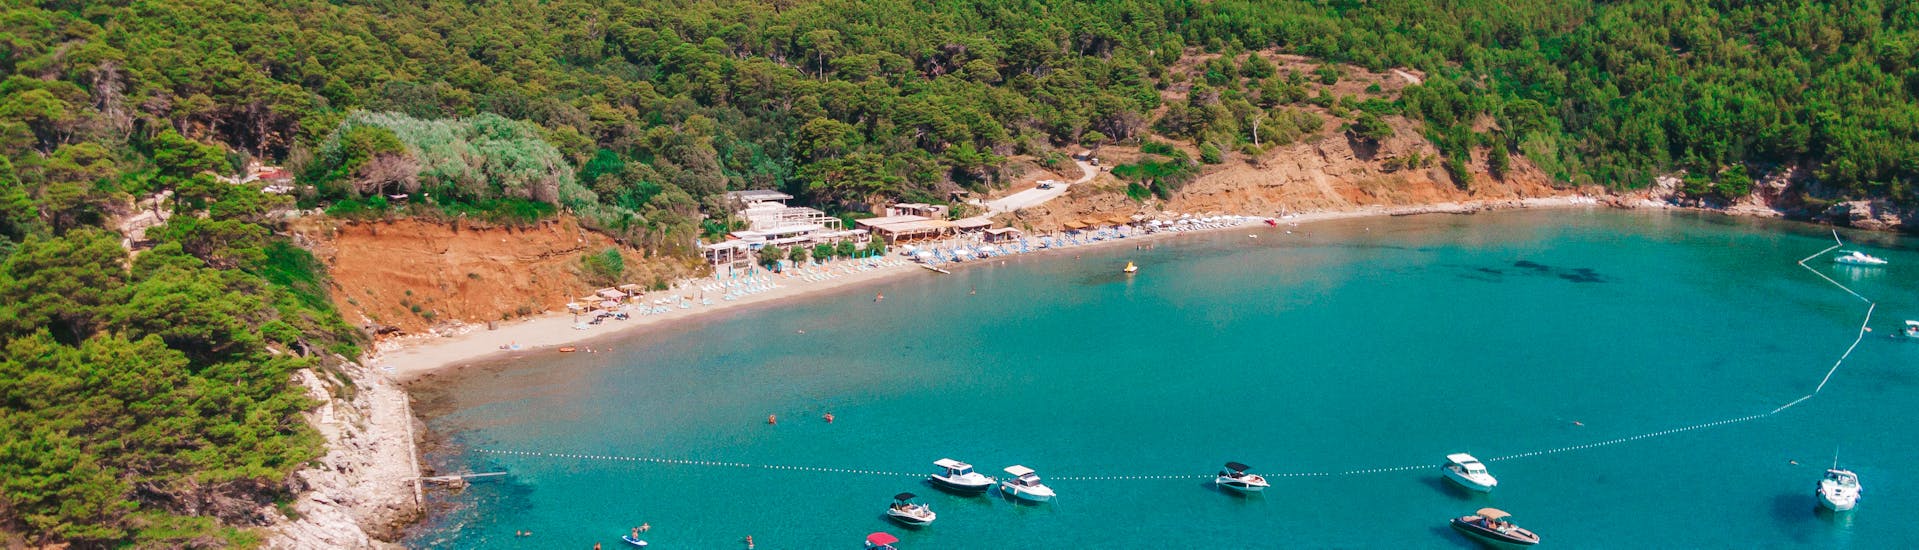 Paseo en barco privado de Dubrovnik a Islas Elaphiti con baño en el mar & avistamiento de fauna.